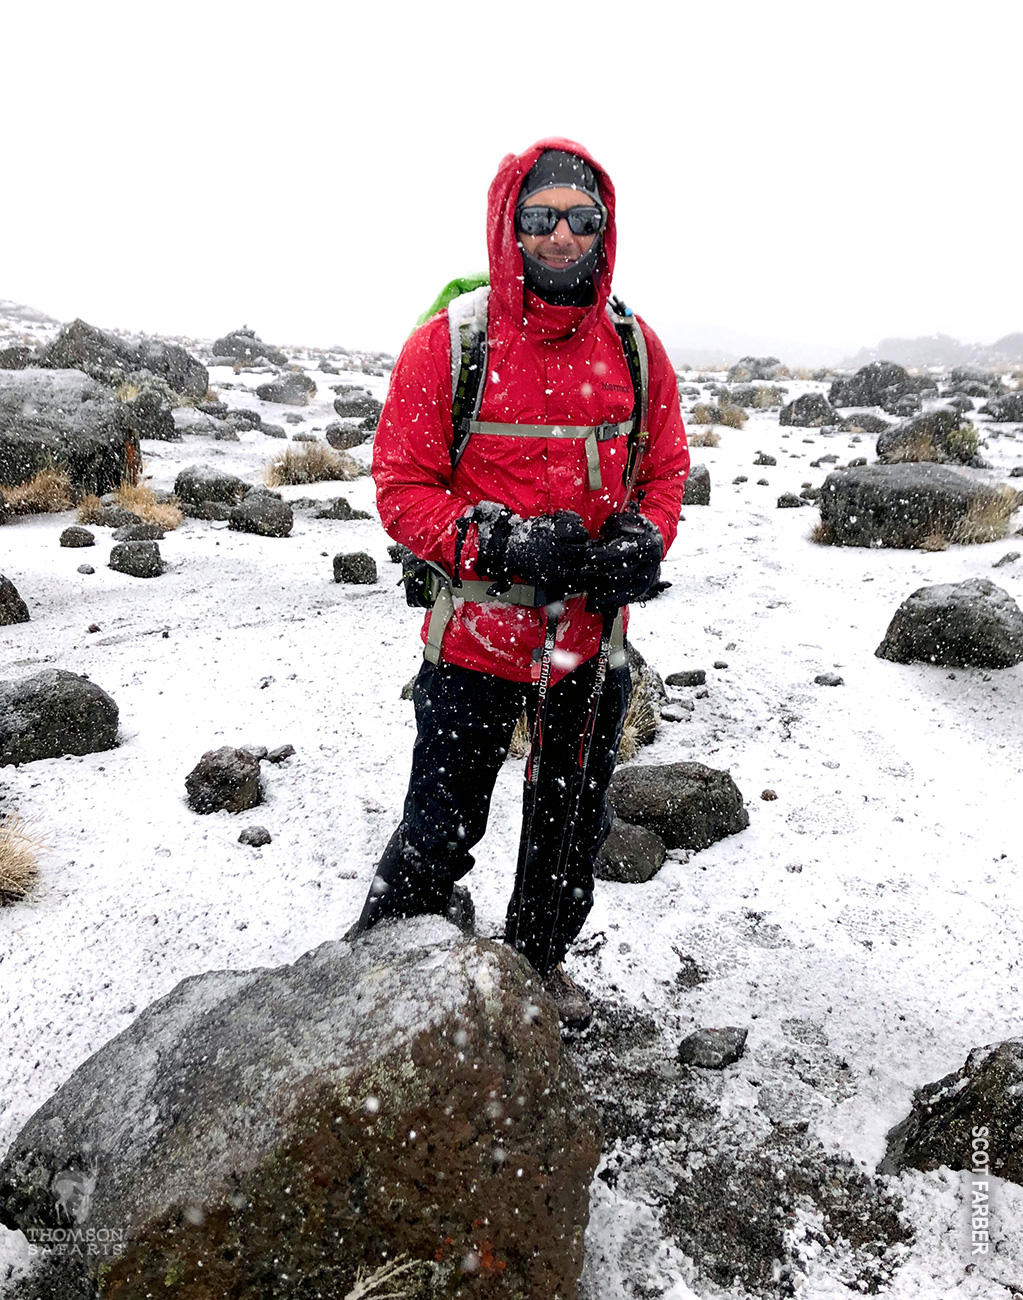 snow on kilimanjaro near the summit